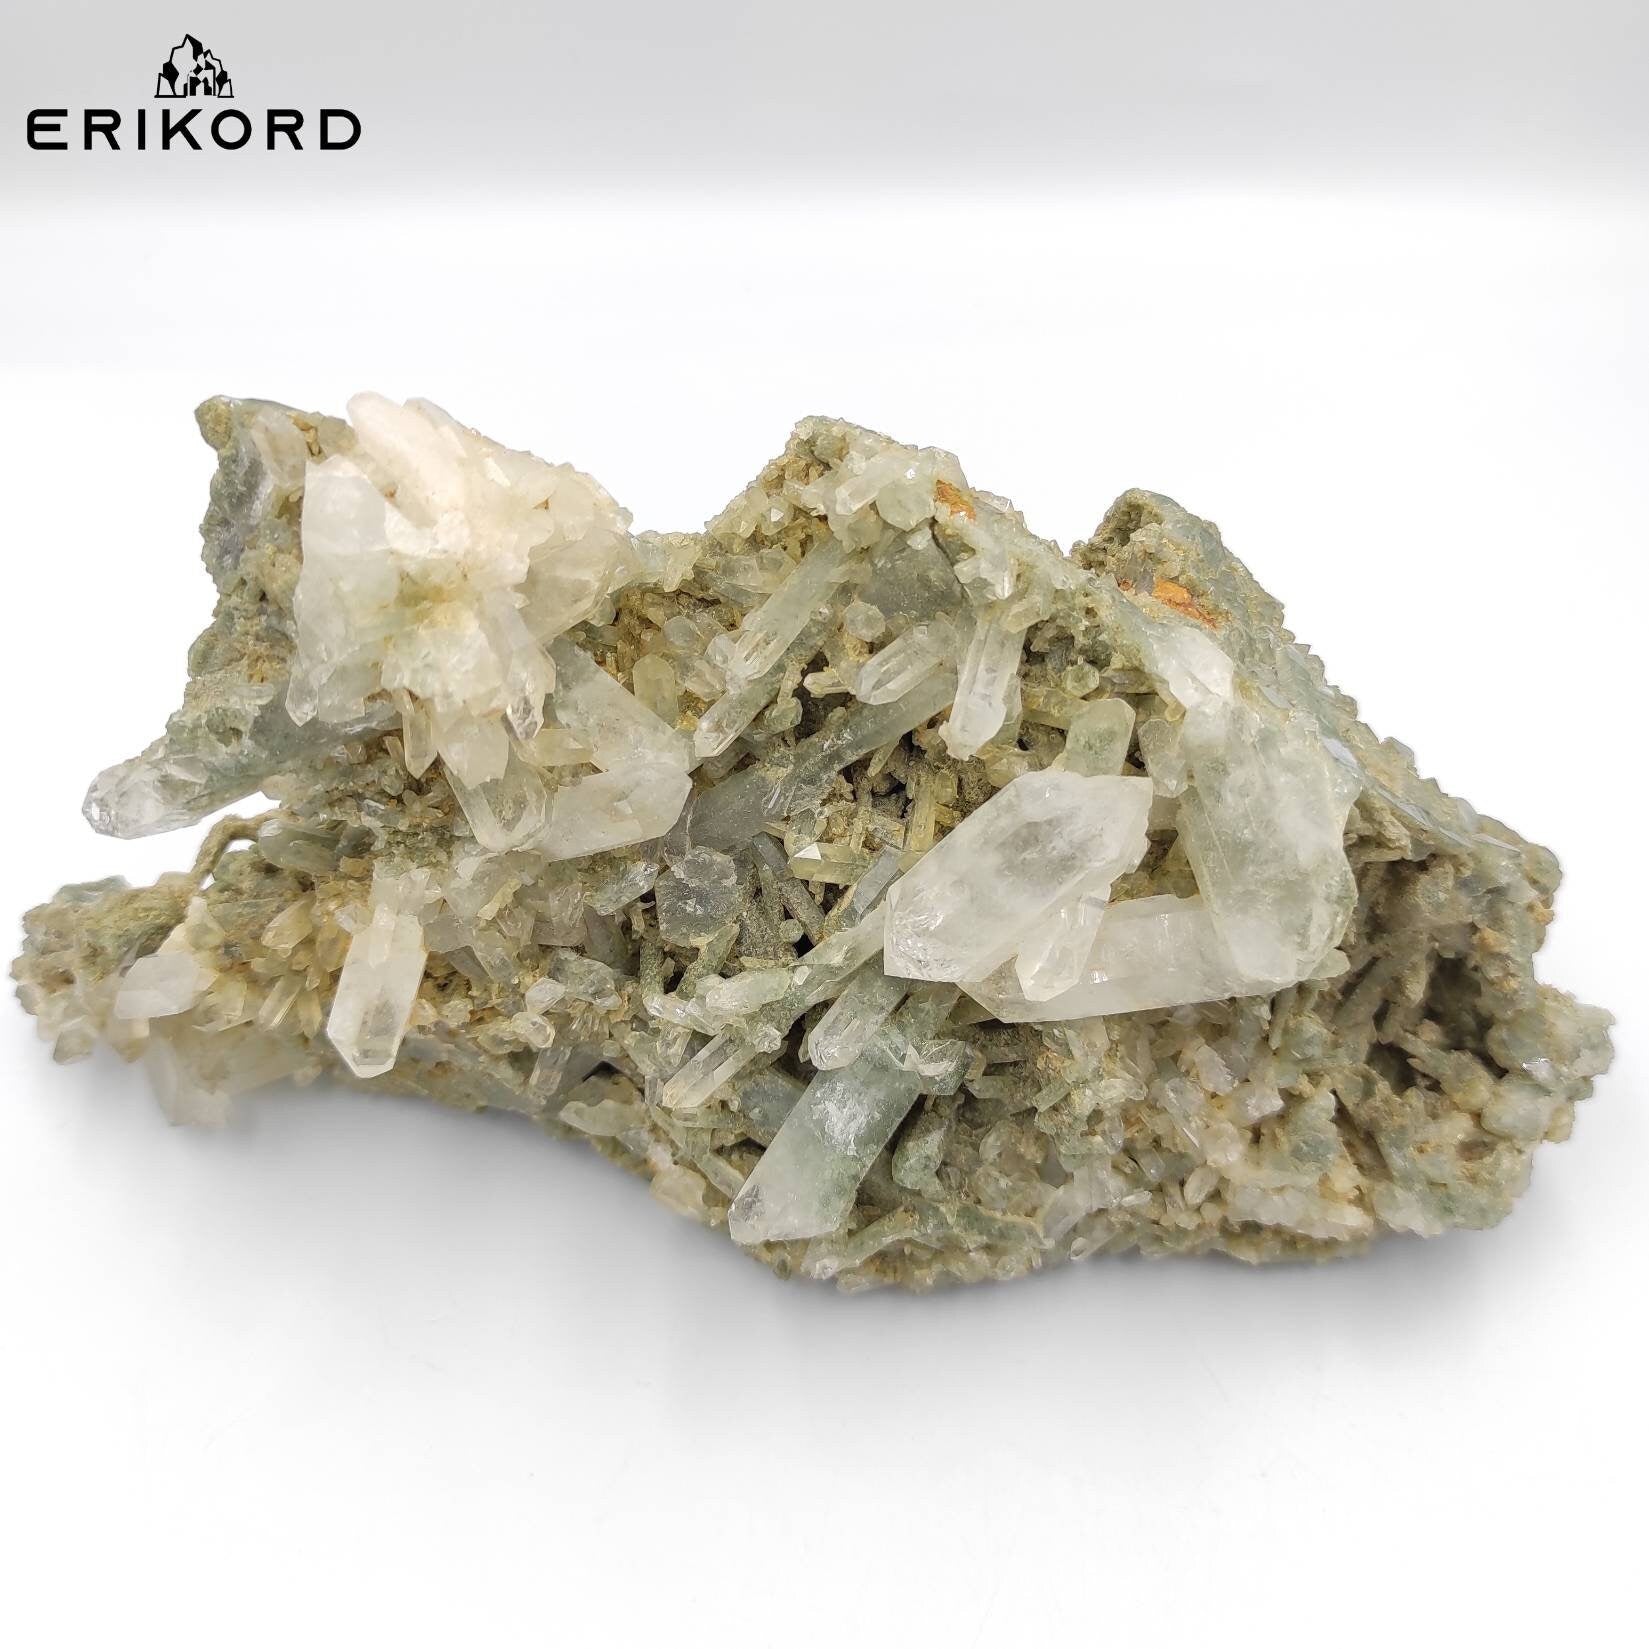 882g Large Chlorine Quartz Crystal Cluster Natural Green Quartz Mineral Cluster Quartz Crystals Pakistan Rough Specimen Clear Quartz Point